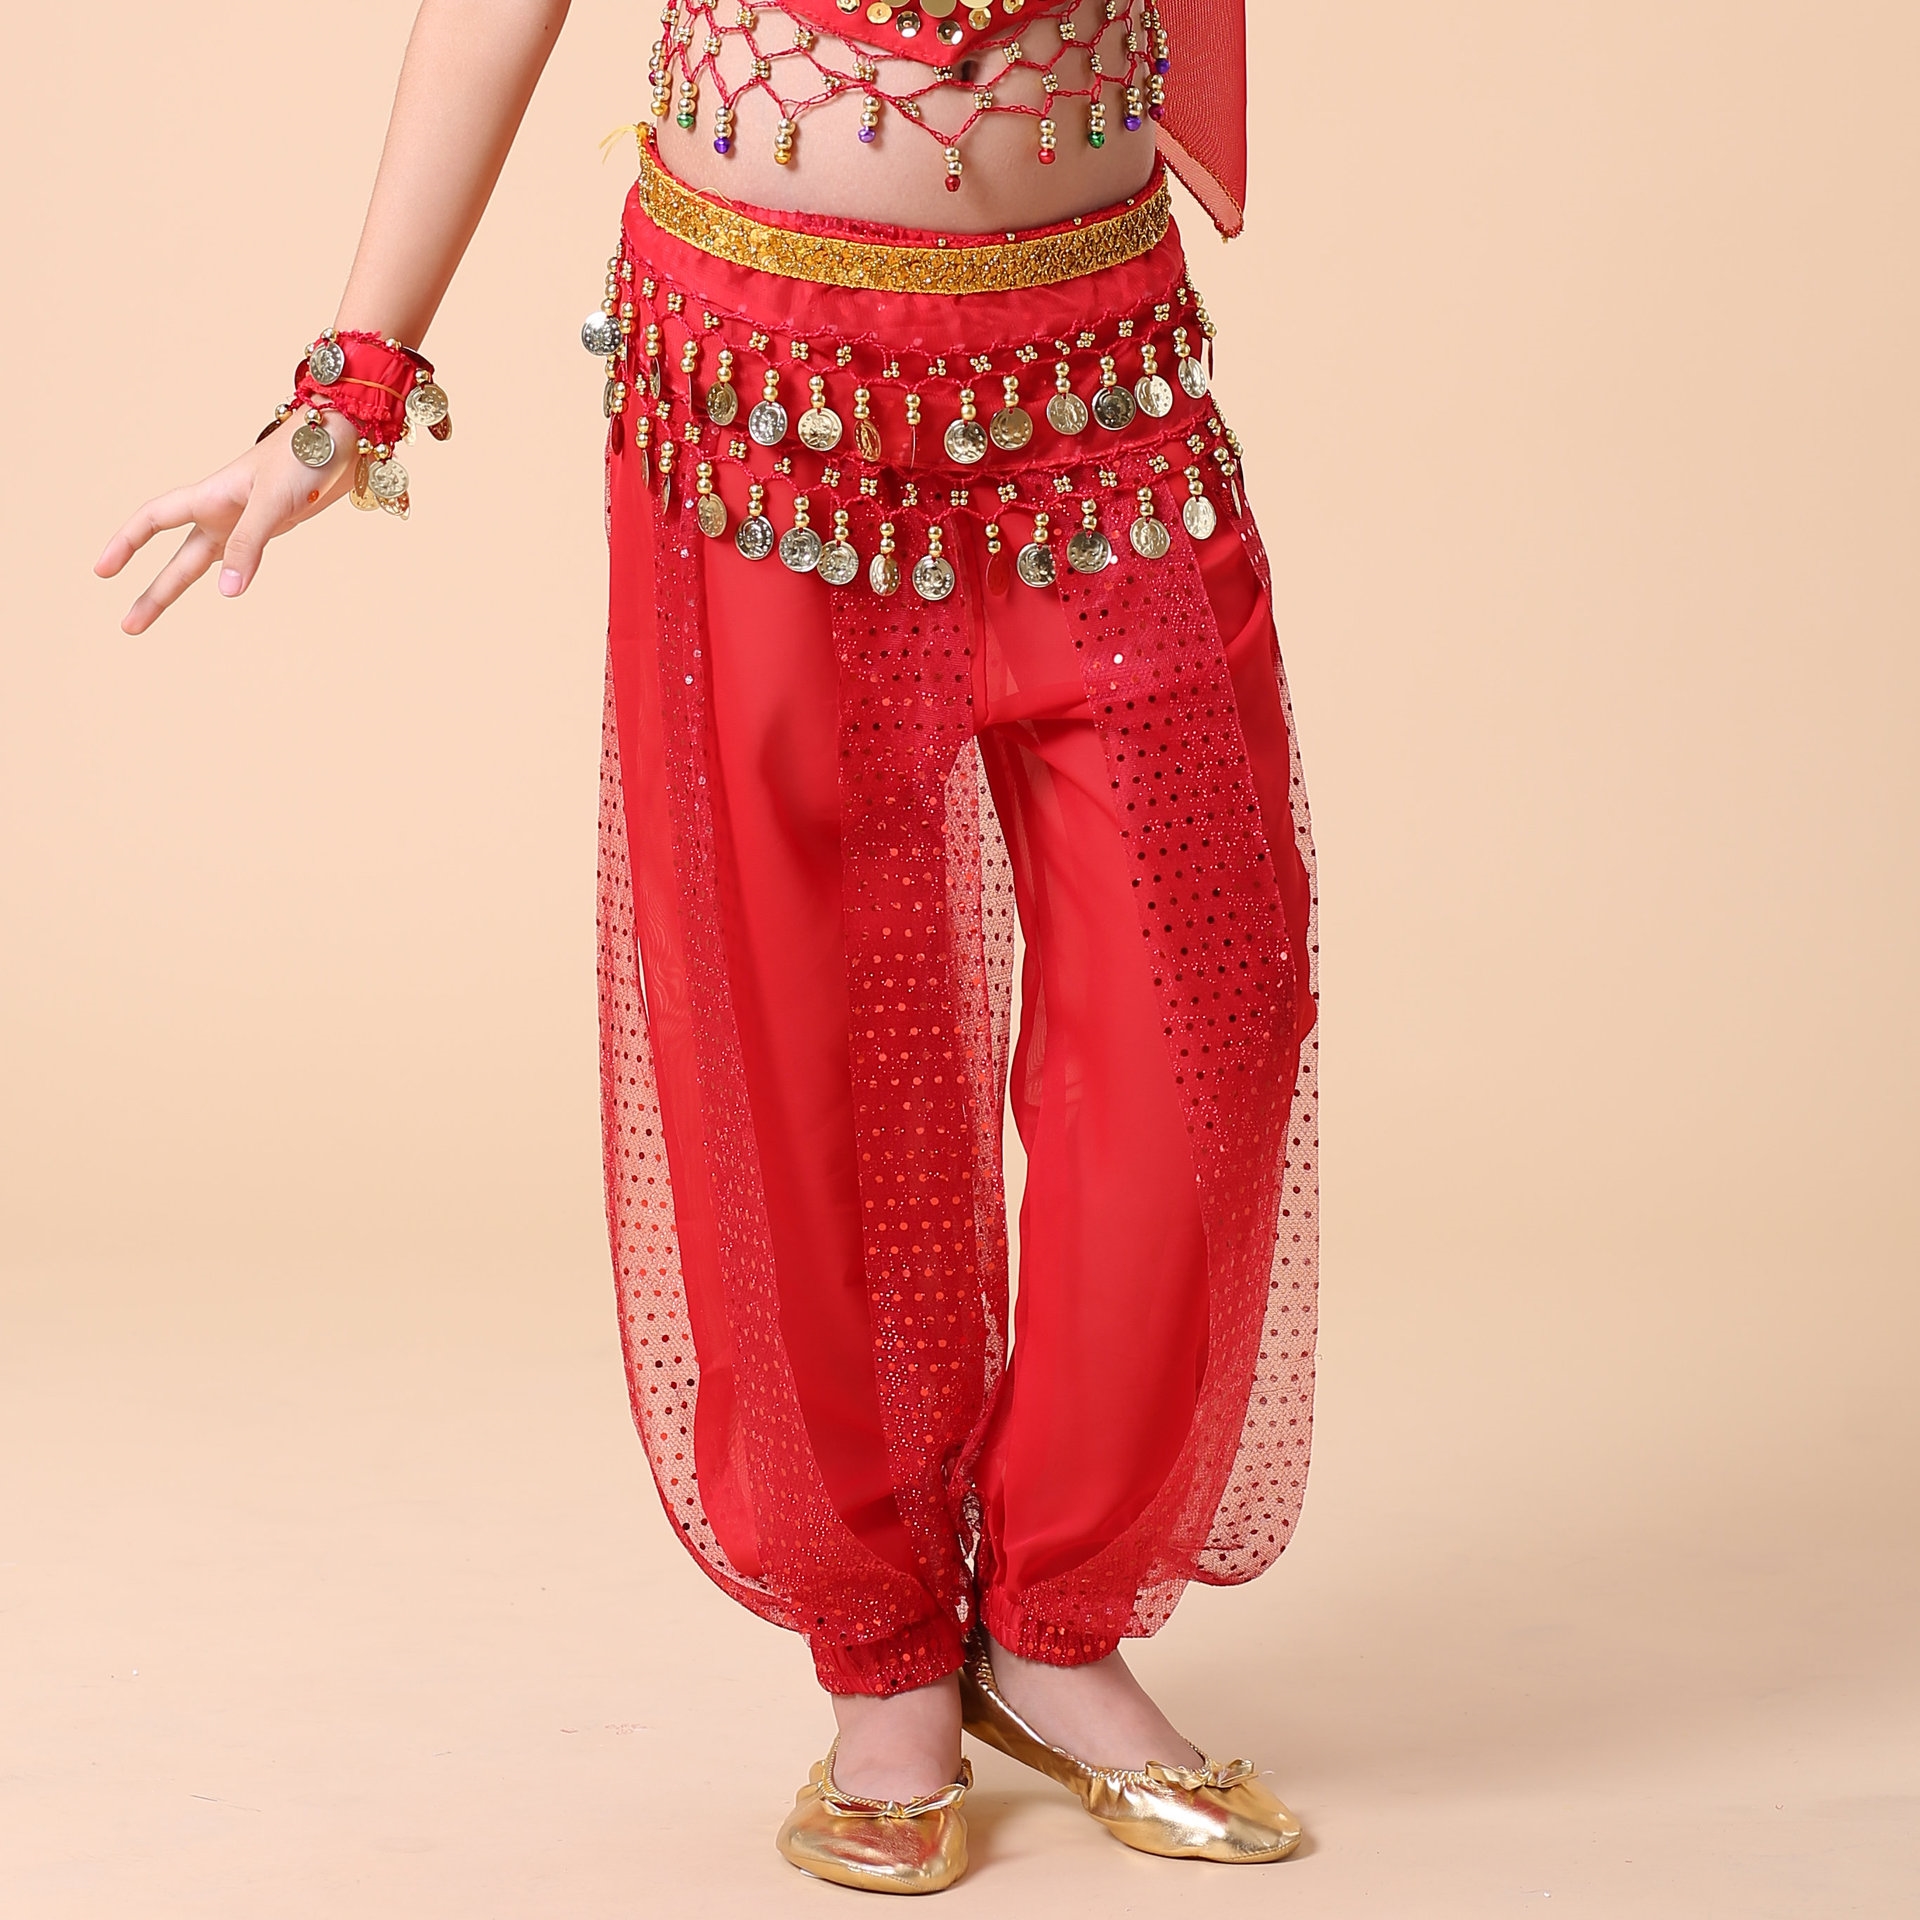 新款小孩亮点裤儿童肚皮舞服装少儿印度舞表演出服跳舞练习服裤子